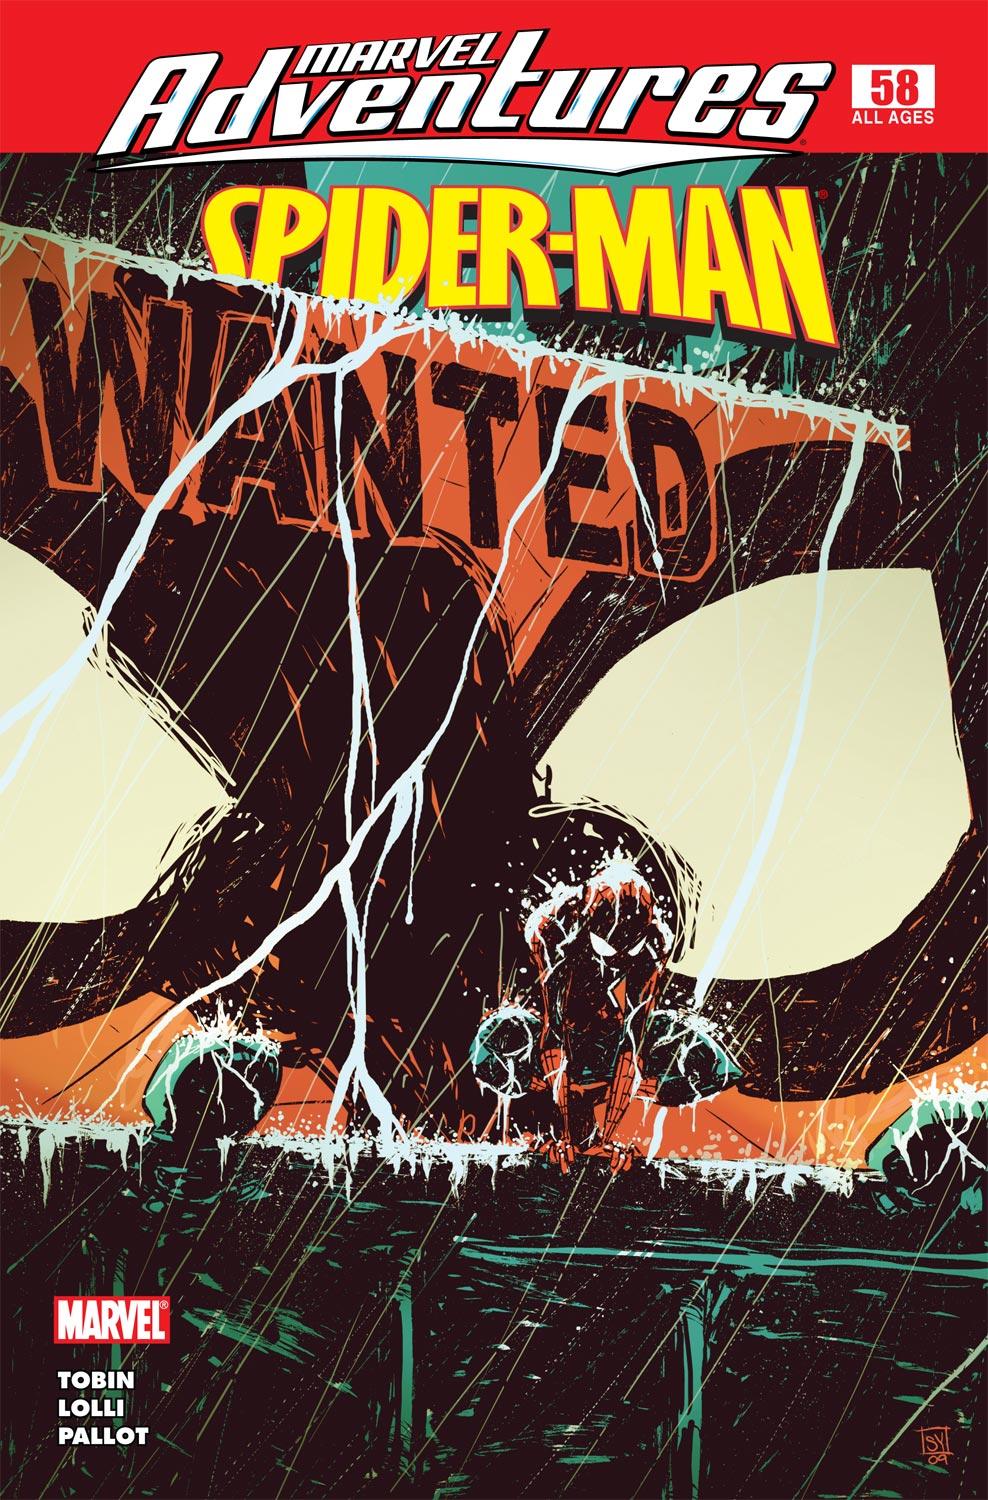 Marvel Adventures Spider-Man (2005) #58